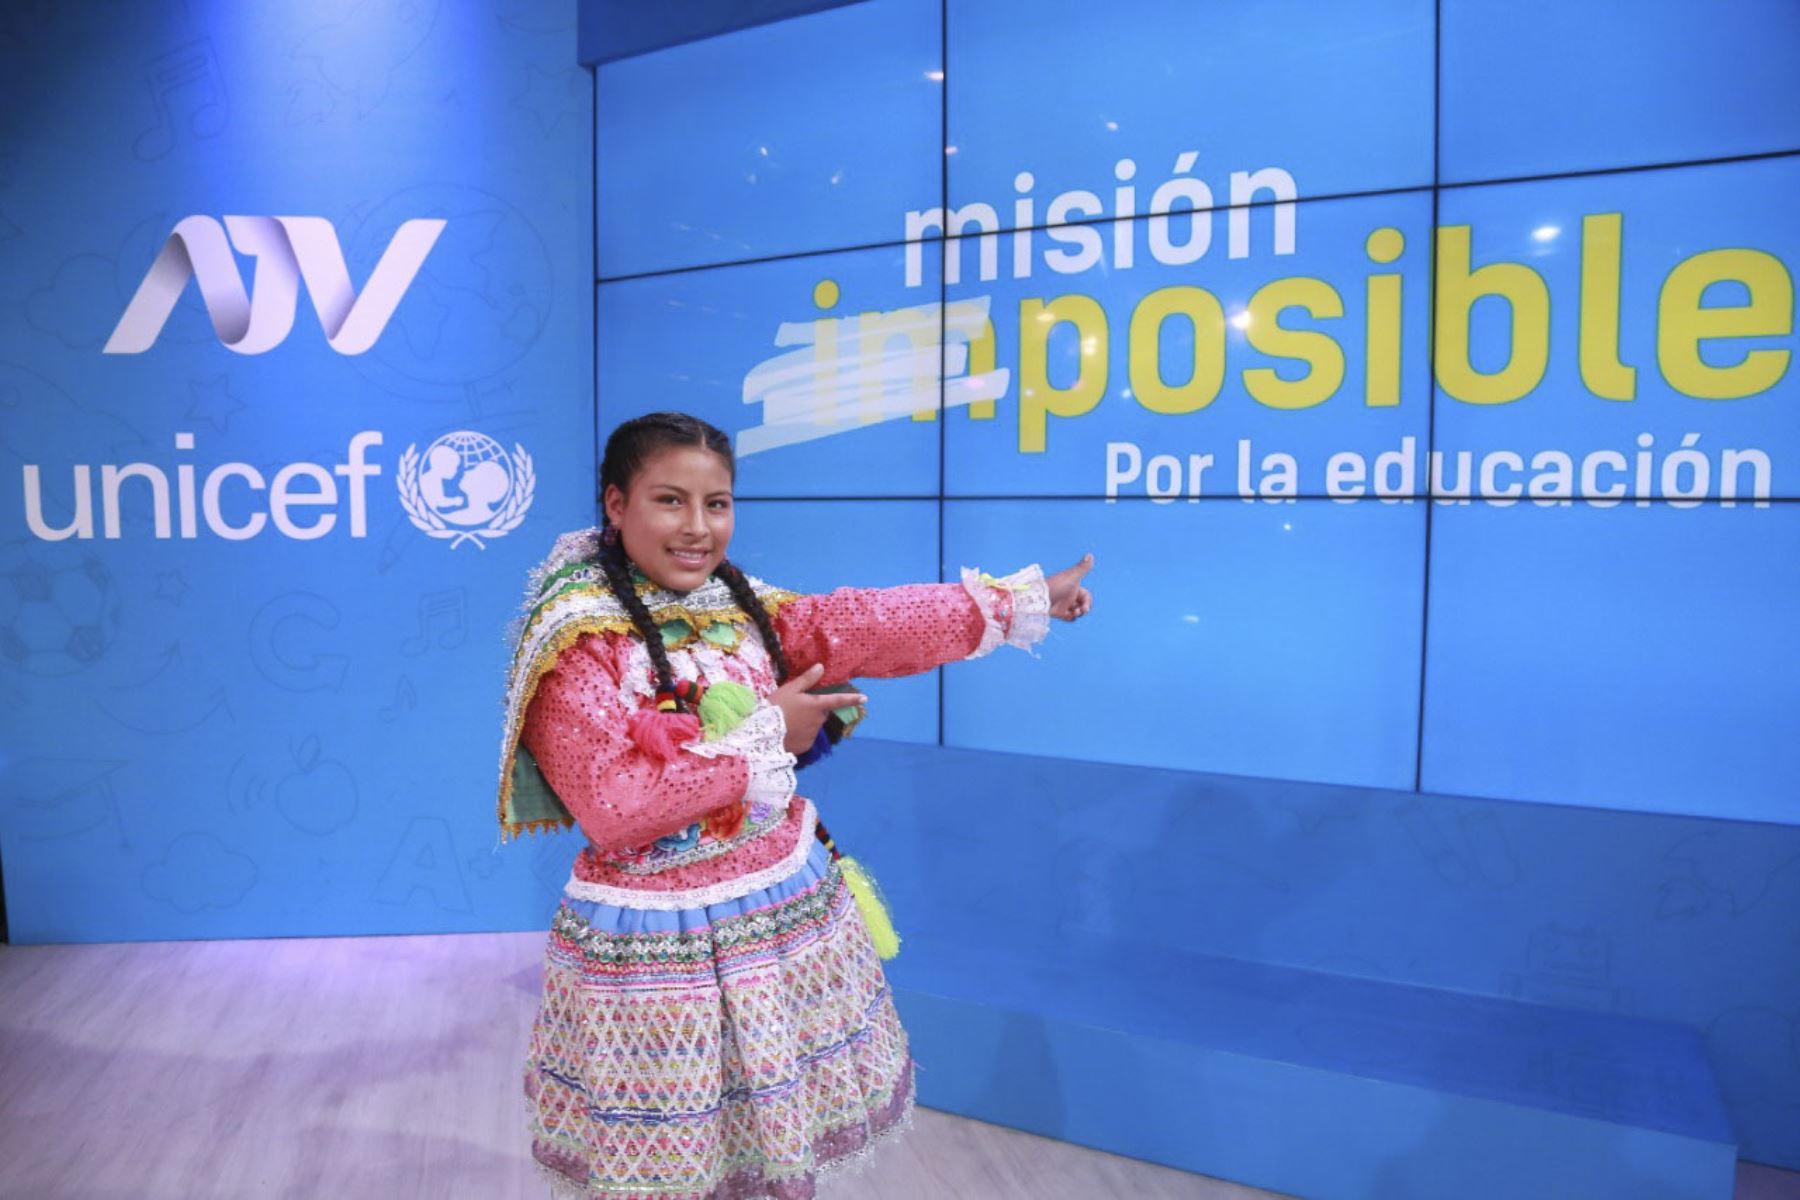 La campaña Misión Posible por la Educación movilizó la solidaridad de todo el Perú por sus niños, niñas y adolescentes. Foto: ANDINA/Unicef.